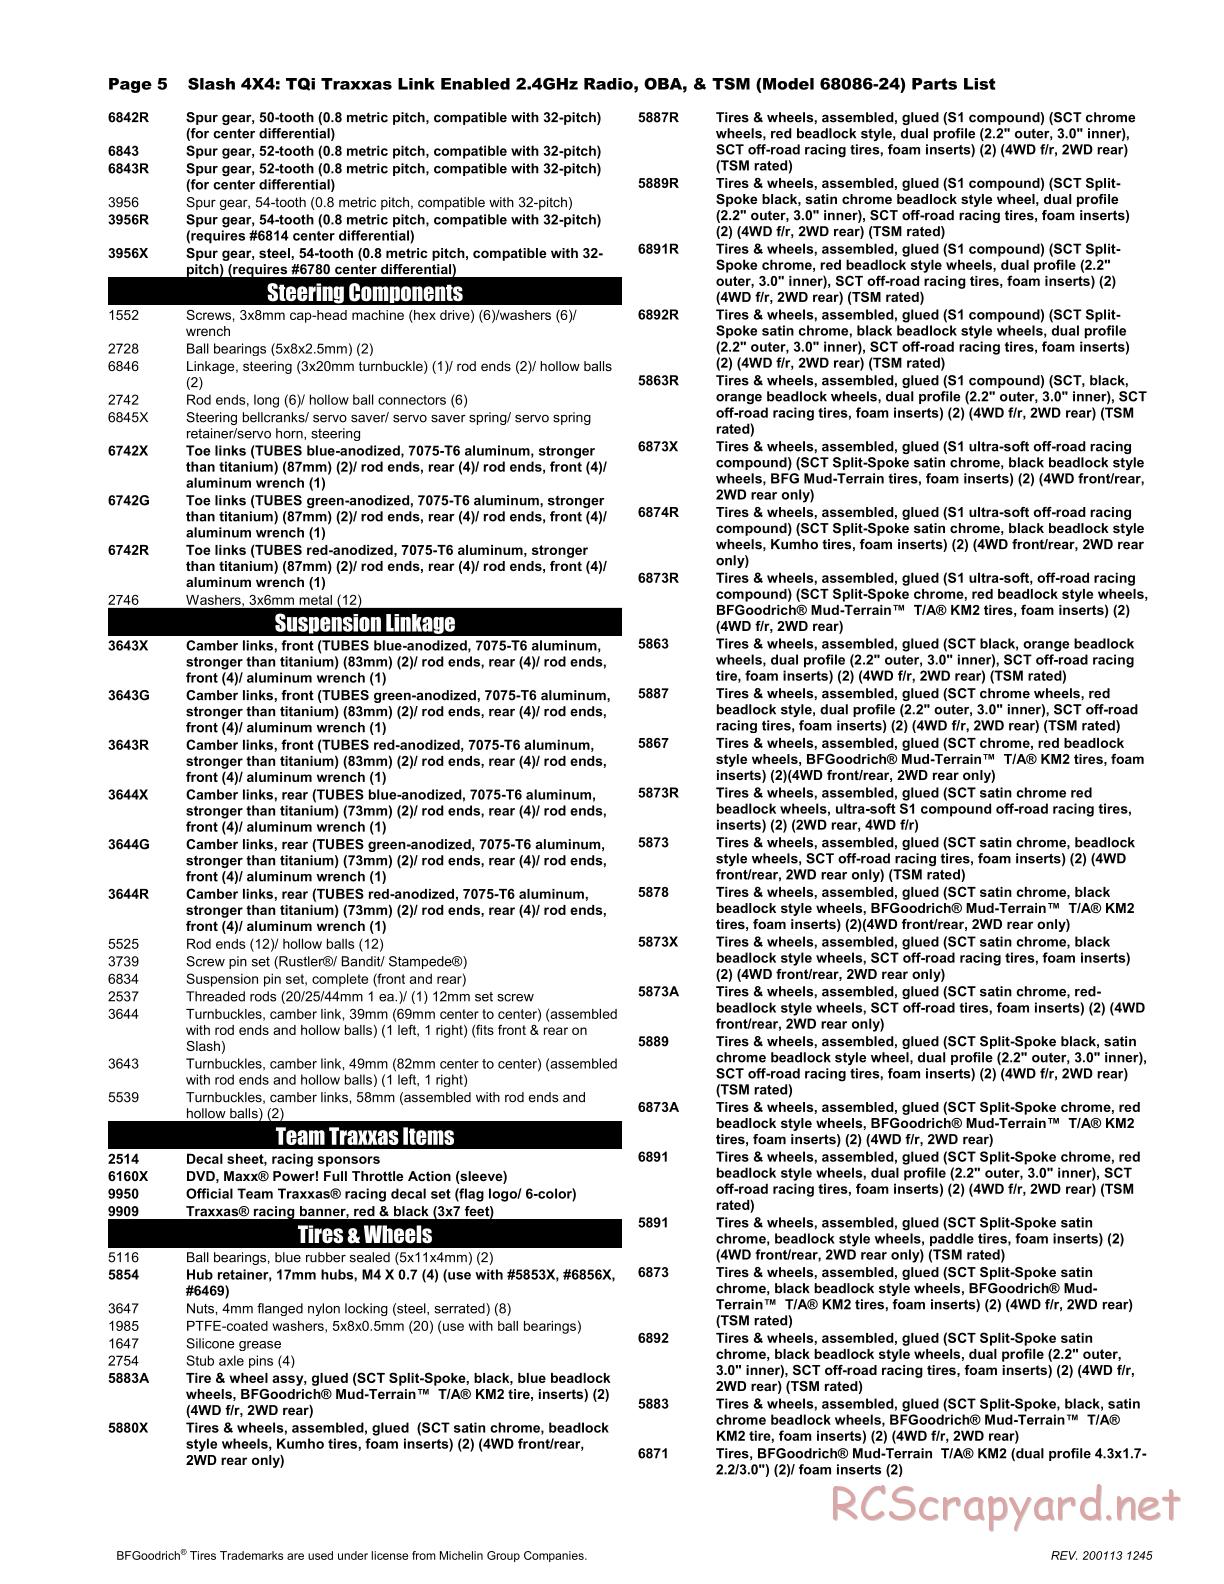 Traxxas - Slash 4x4 TSM OBA (2017) - Parts List - Page 5